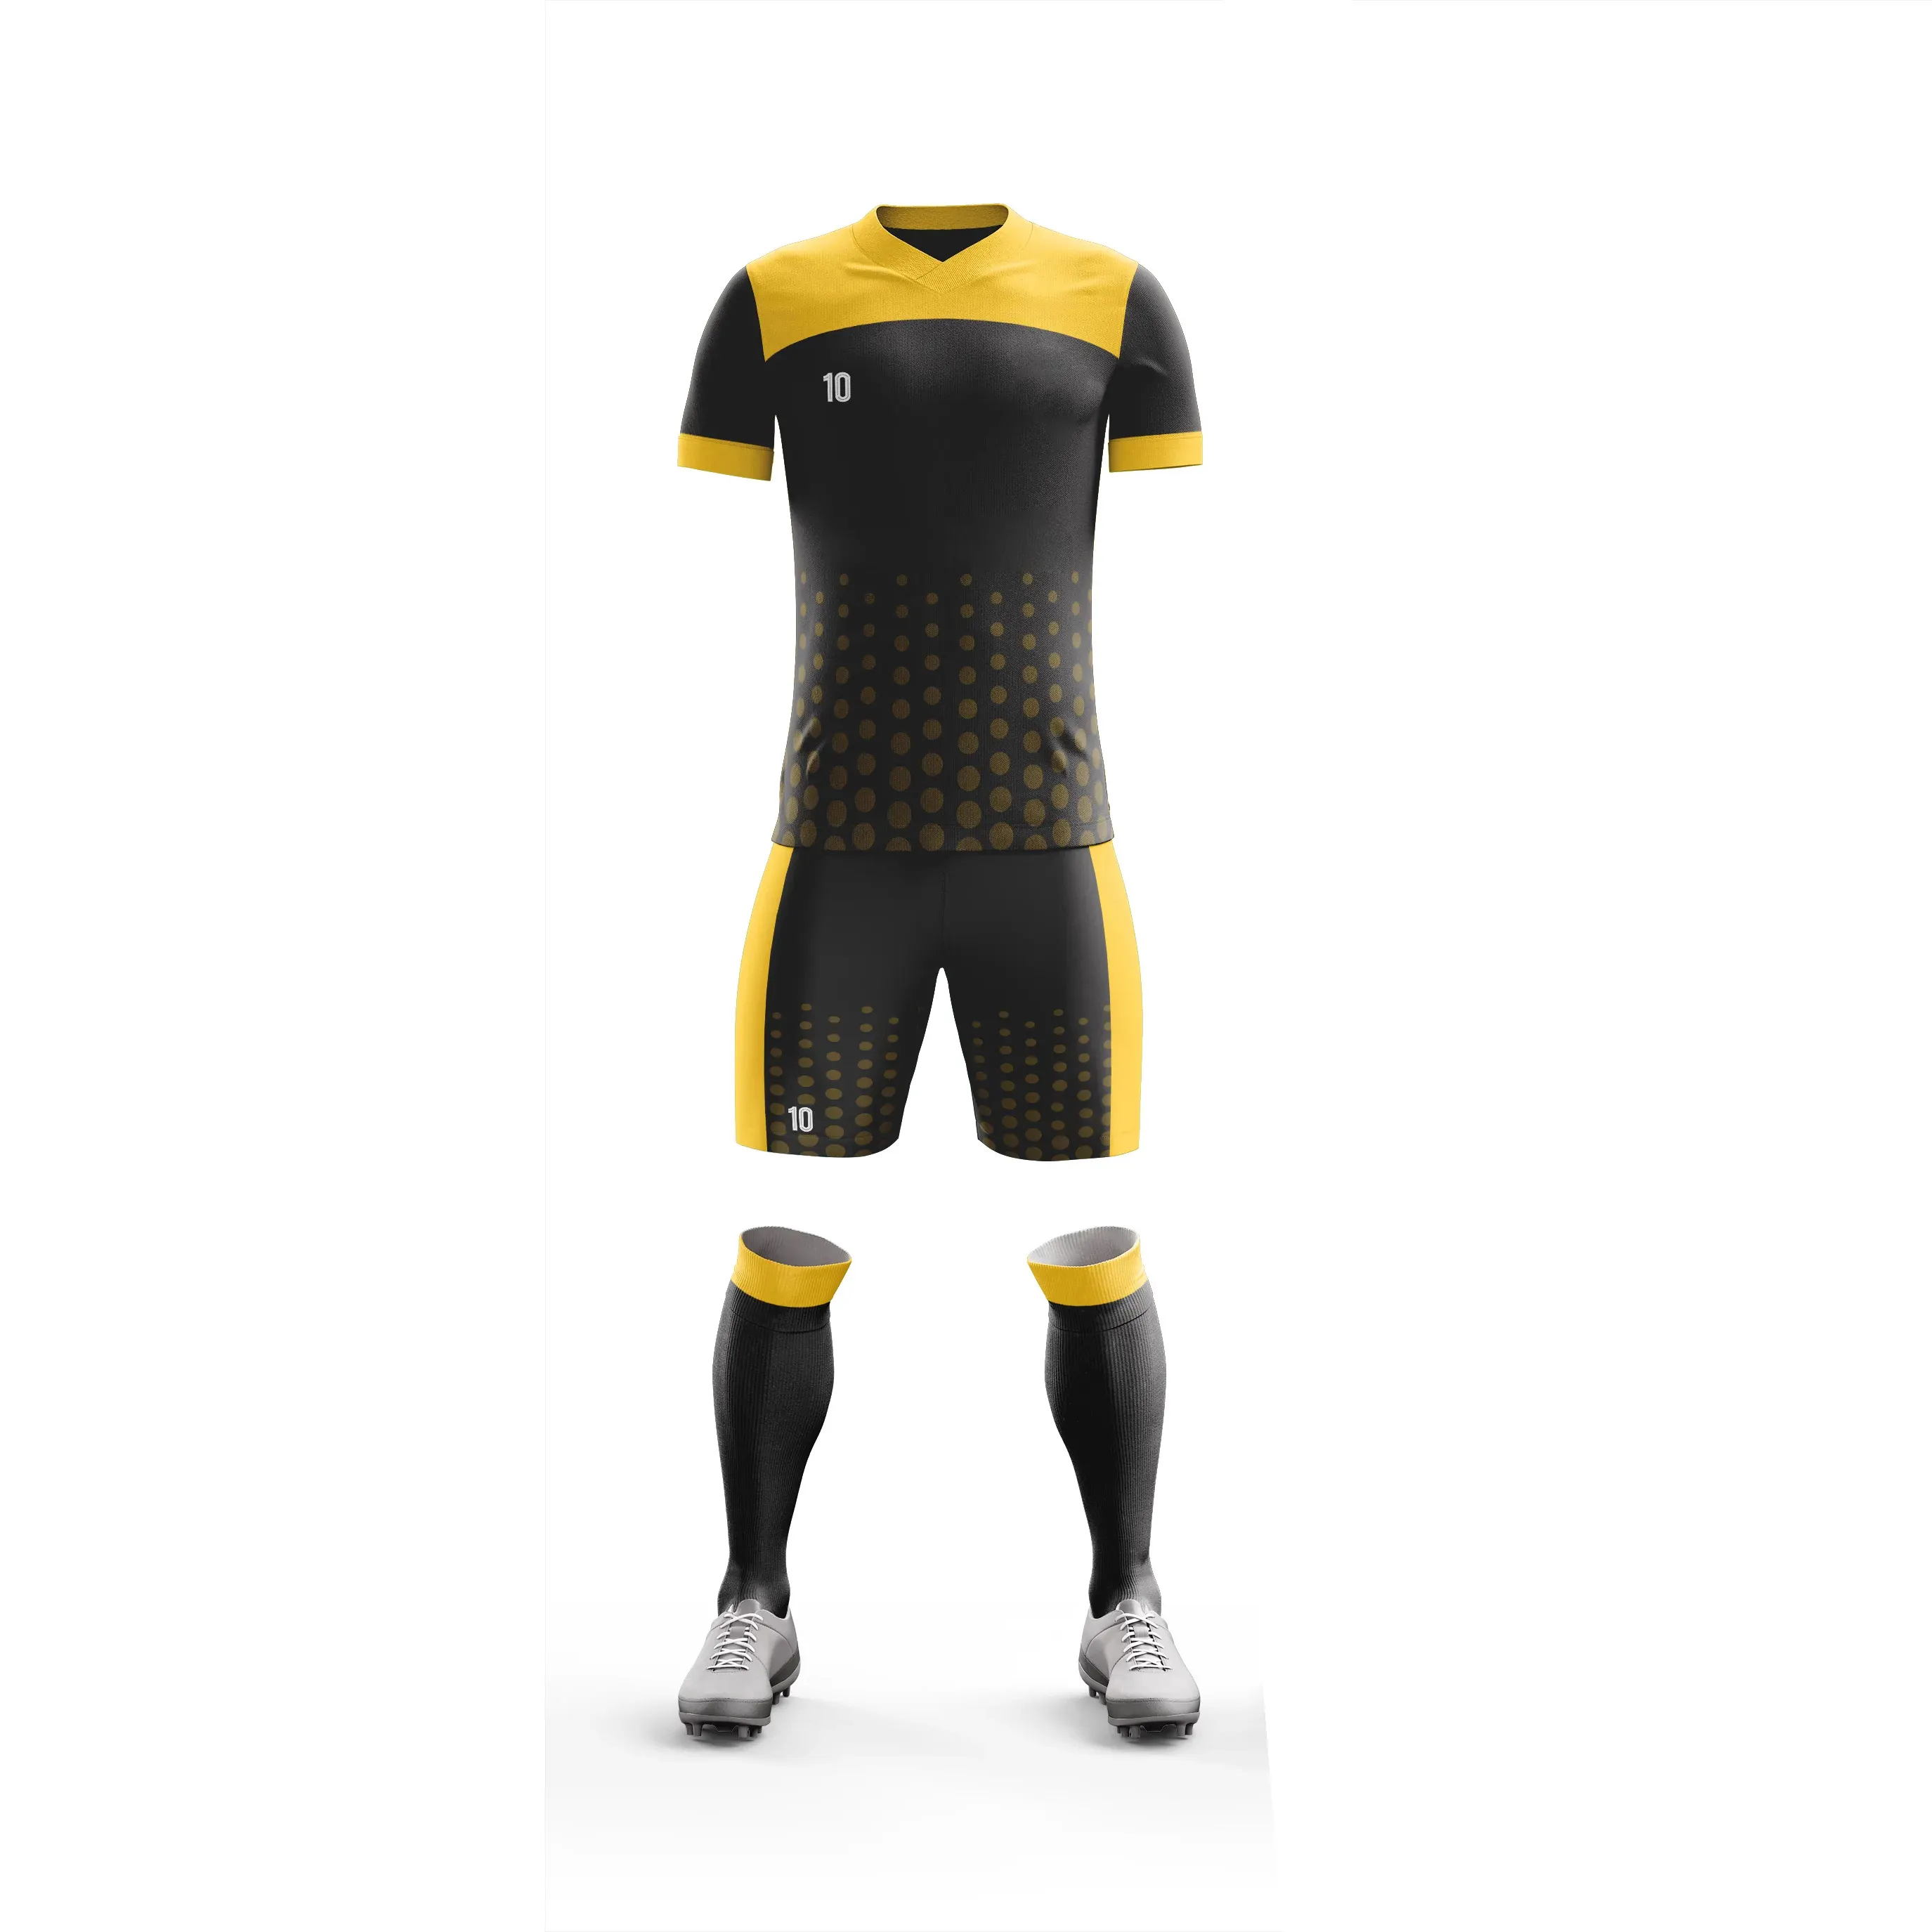 2023 새로운 사용자 정의 디자인 하이 퀄리티 축구 유니폼 도매 가격 남자 축구 유니폼 만든 파키스탄